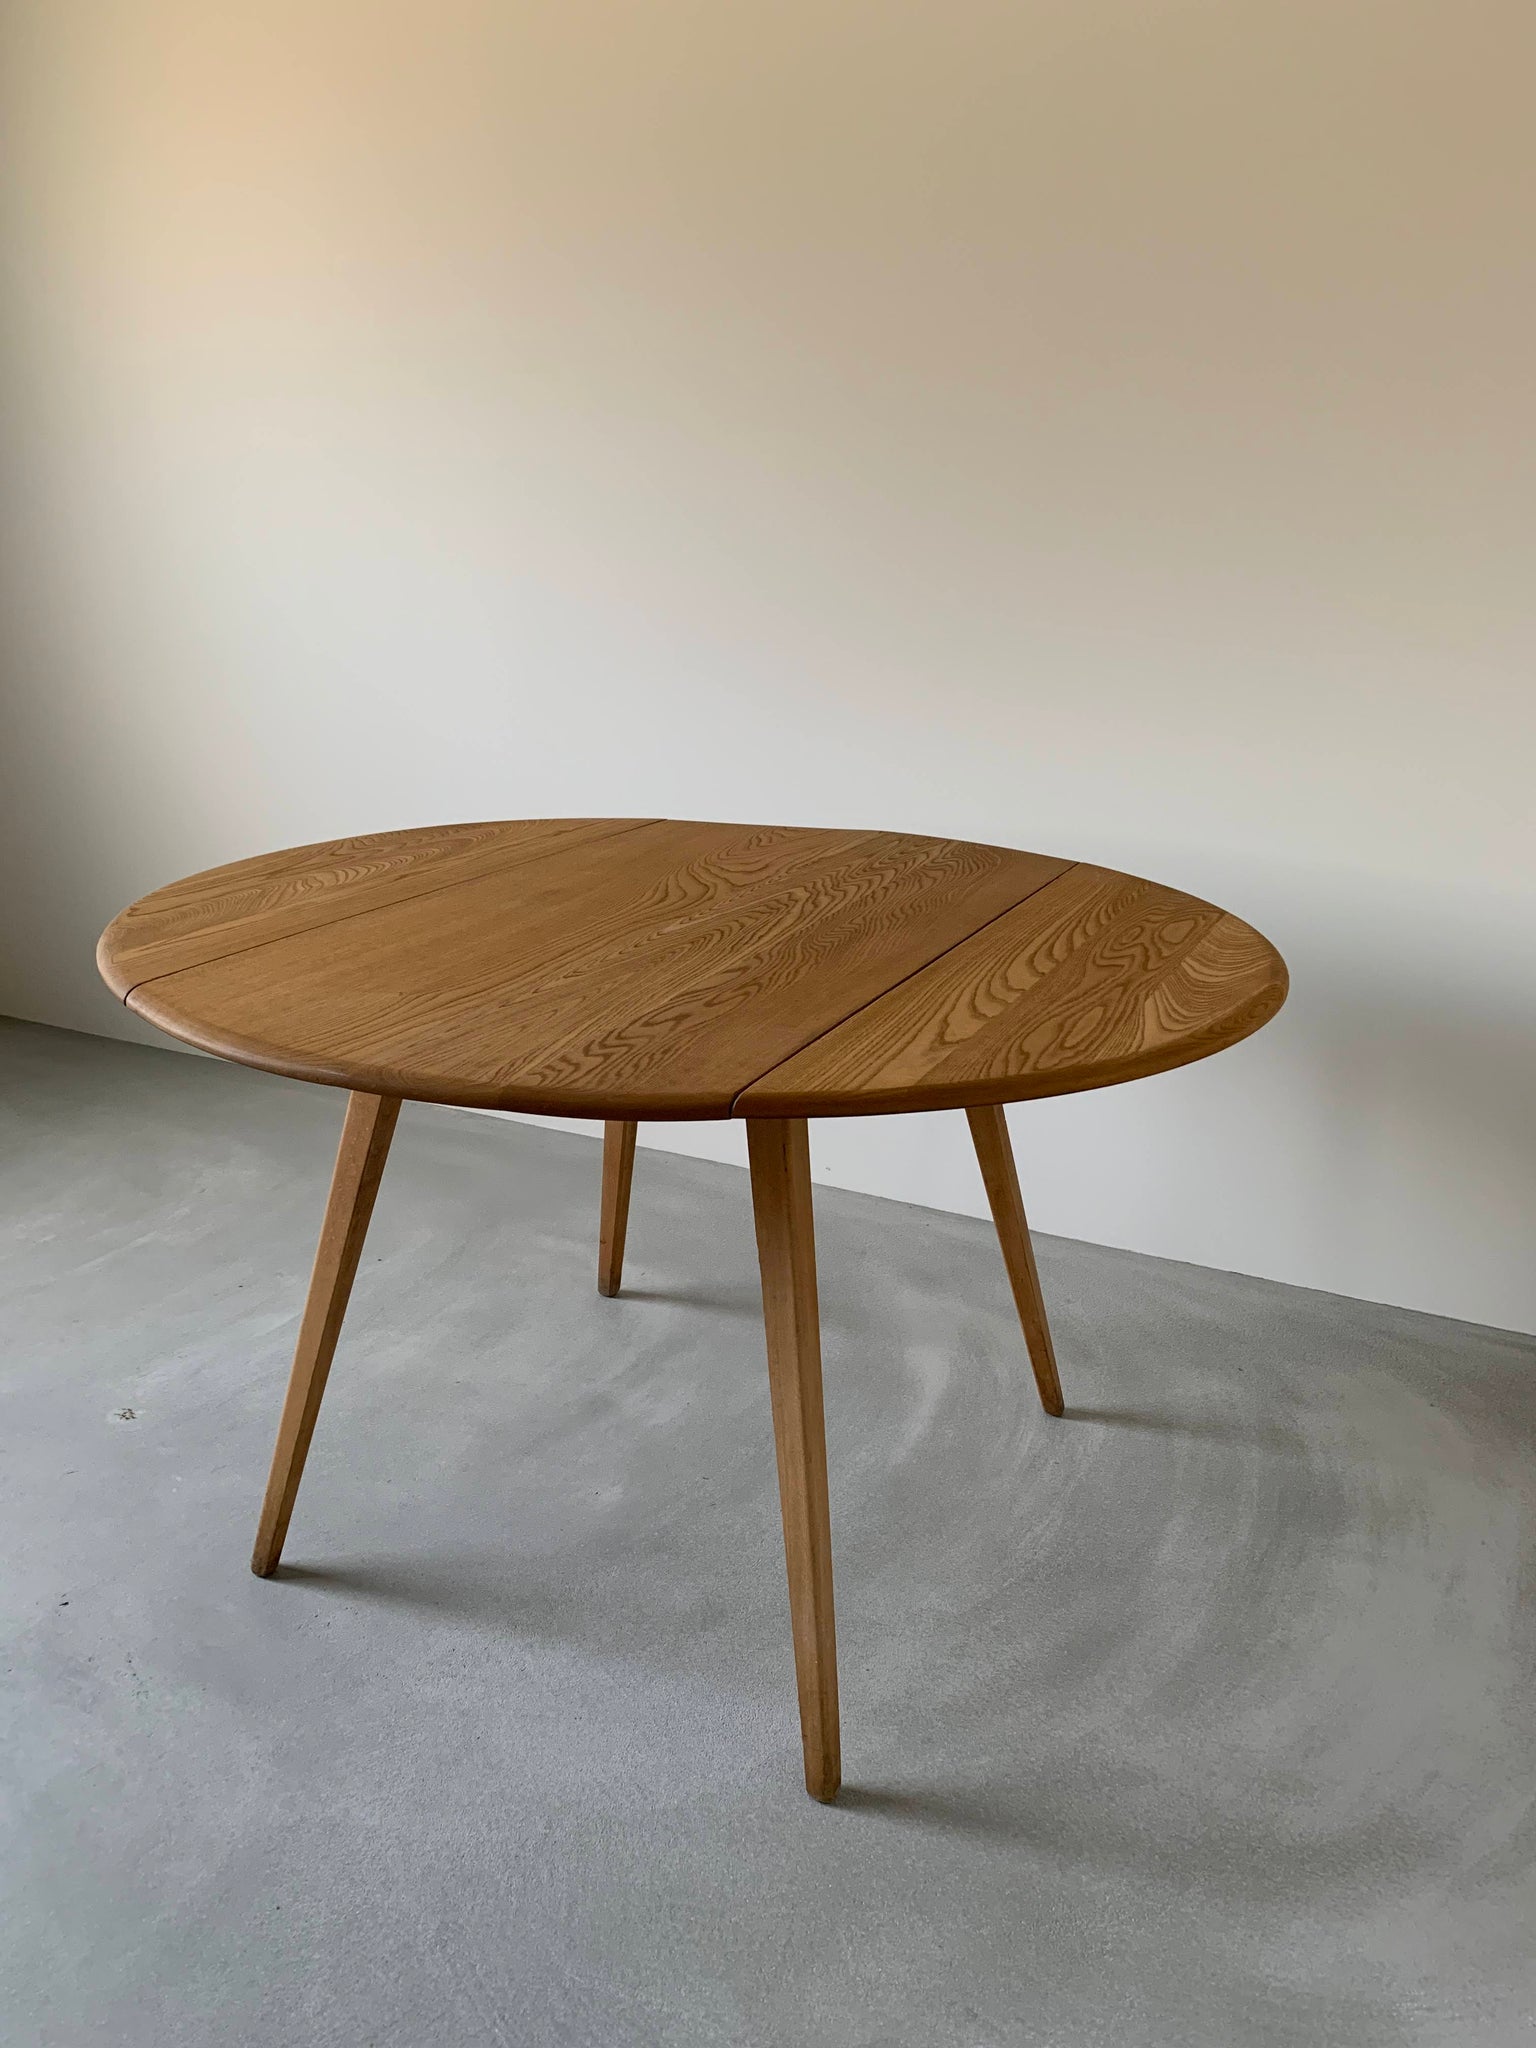 アーコール ドロップリーフ テーブル'384' / ercol round shaped dropleaf dining table '384' #0005